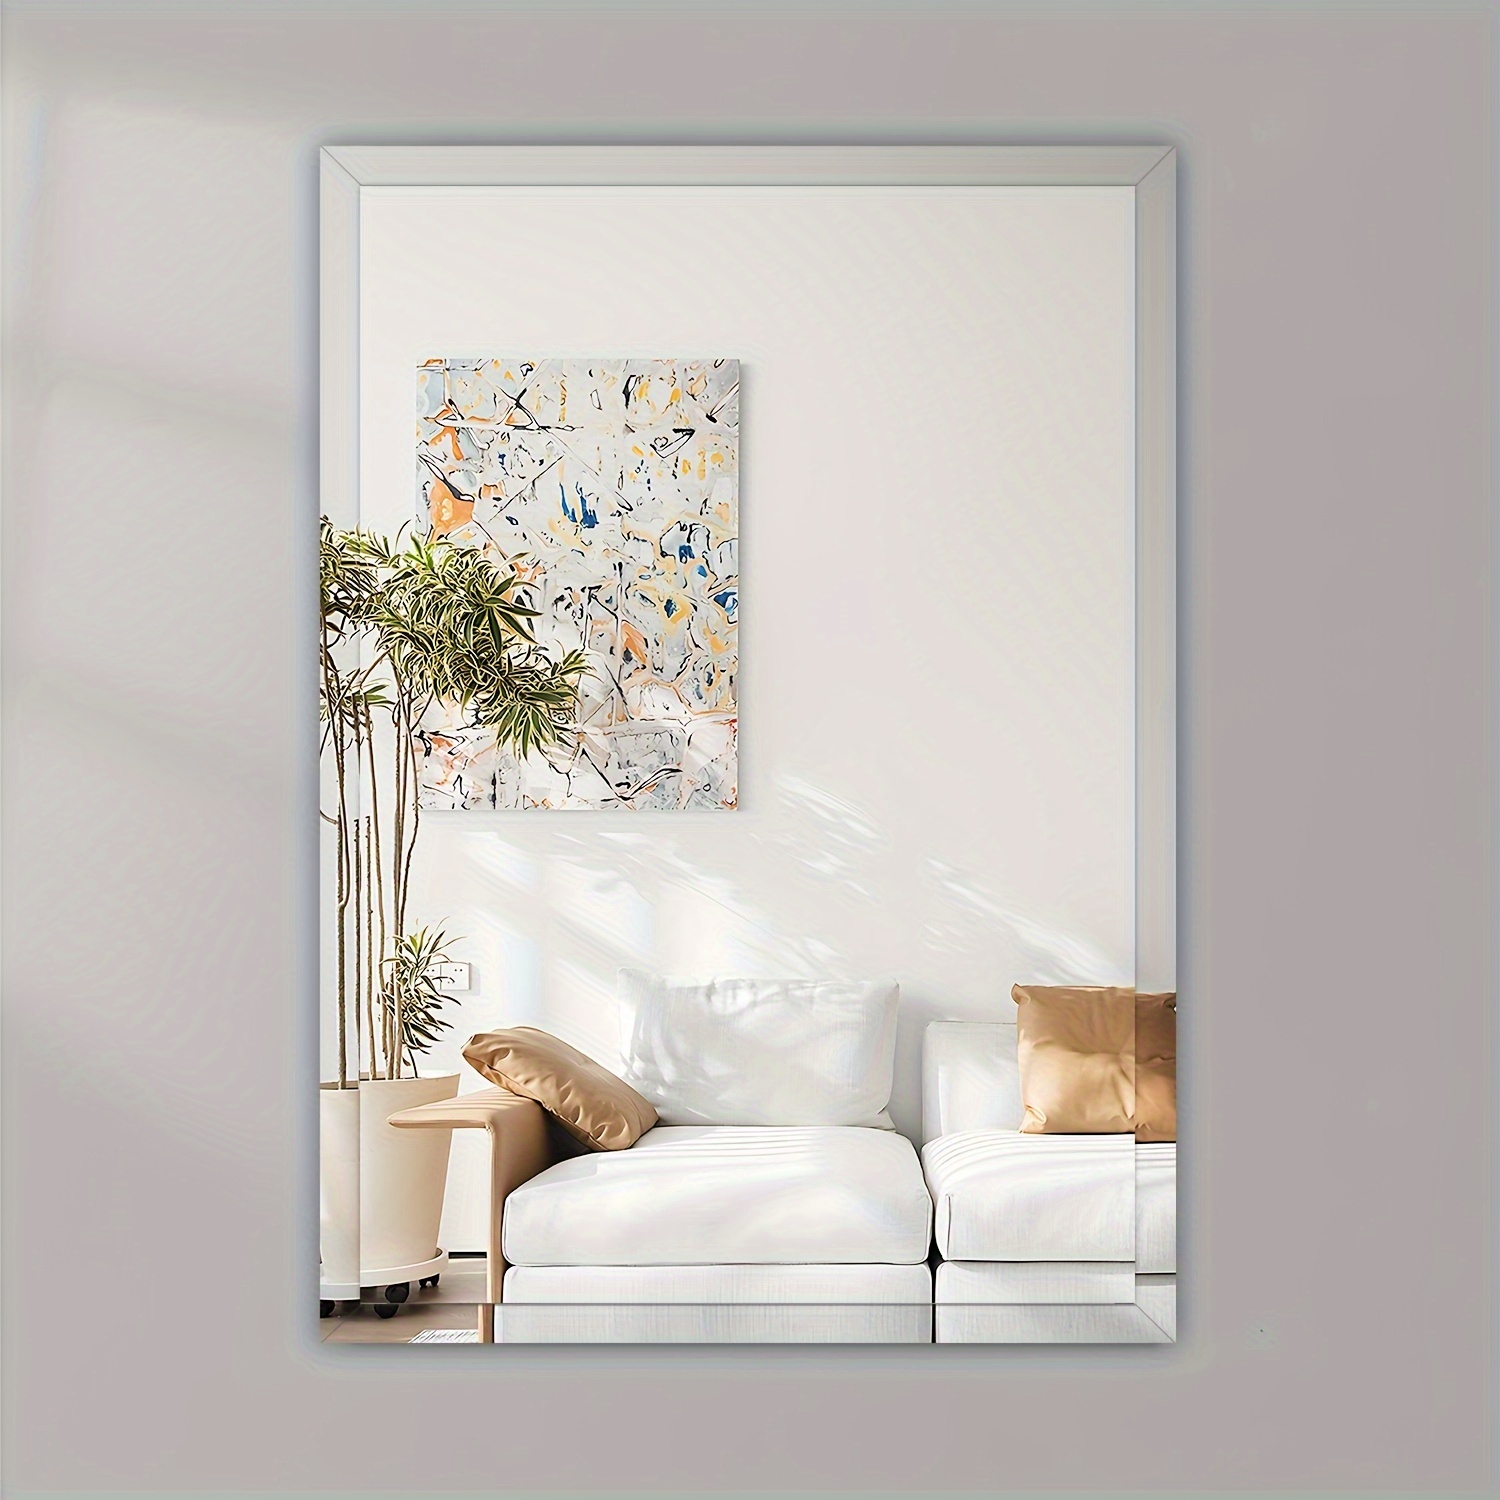 1 Stück Rahmenlose Rechteckige Spiegel Mit Abschrägung, Wandspiegel 29,97  Cm × 41,91 Cm, Moderner Badezimmer-Wandspiegel, Leichtes Poliertes Glas